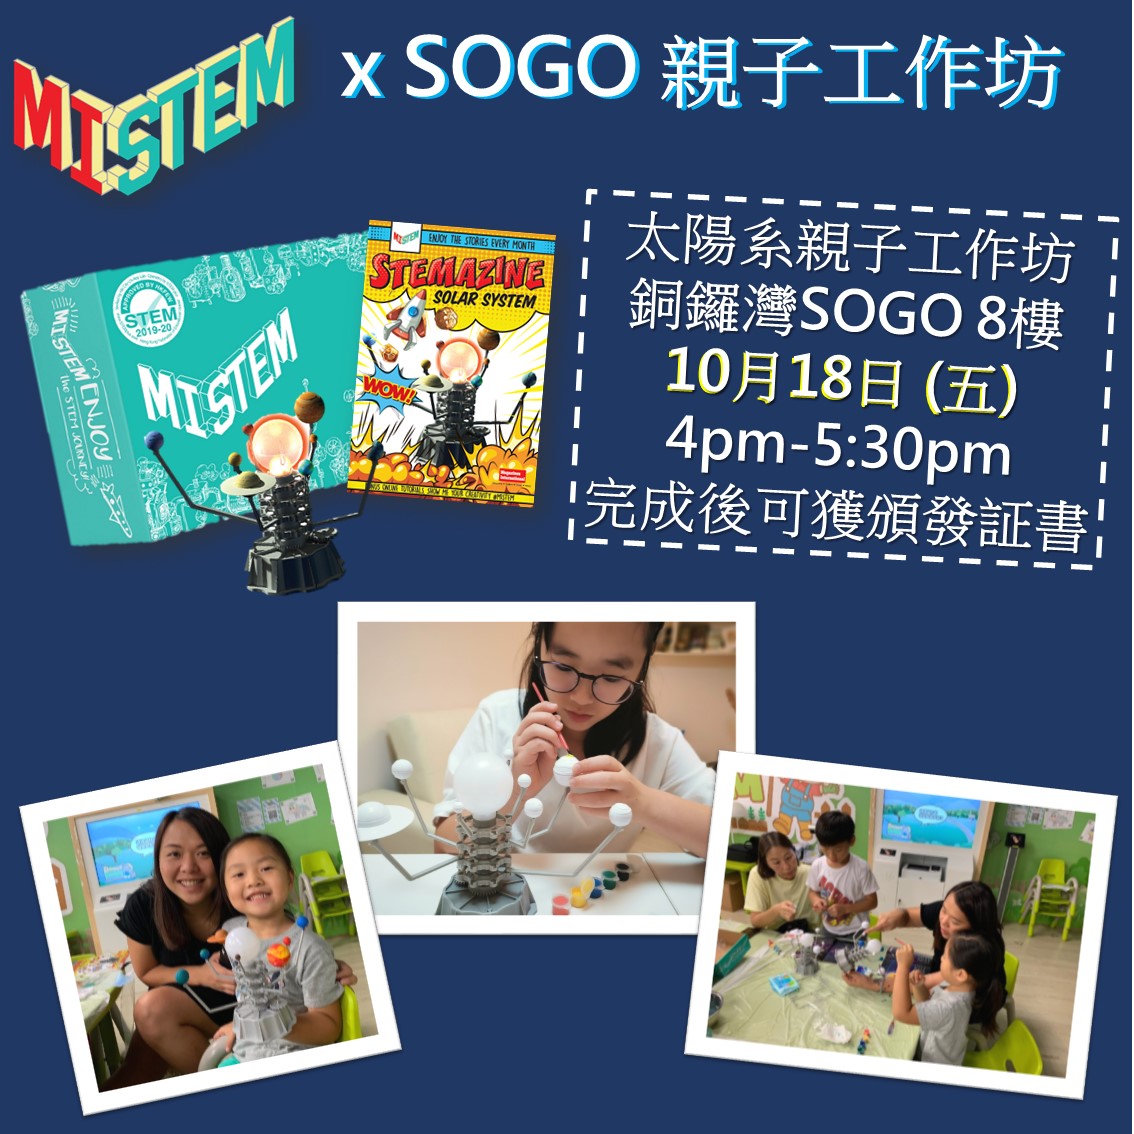 18/10/2019 (Fri) MI STEM x SOGO Workshop Image